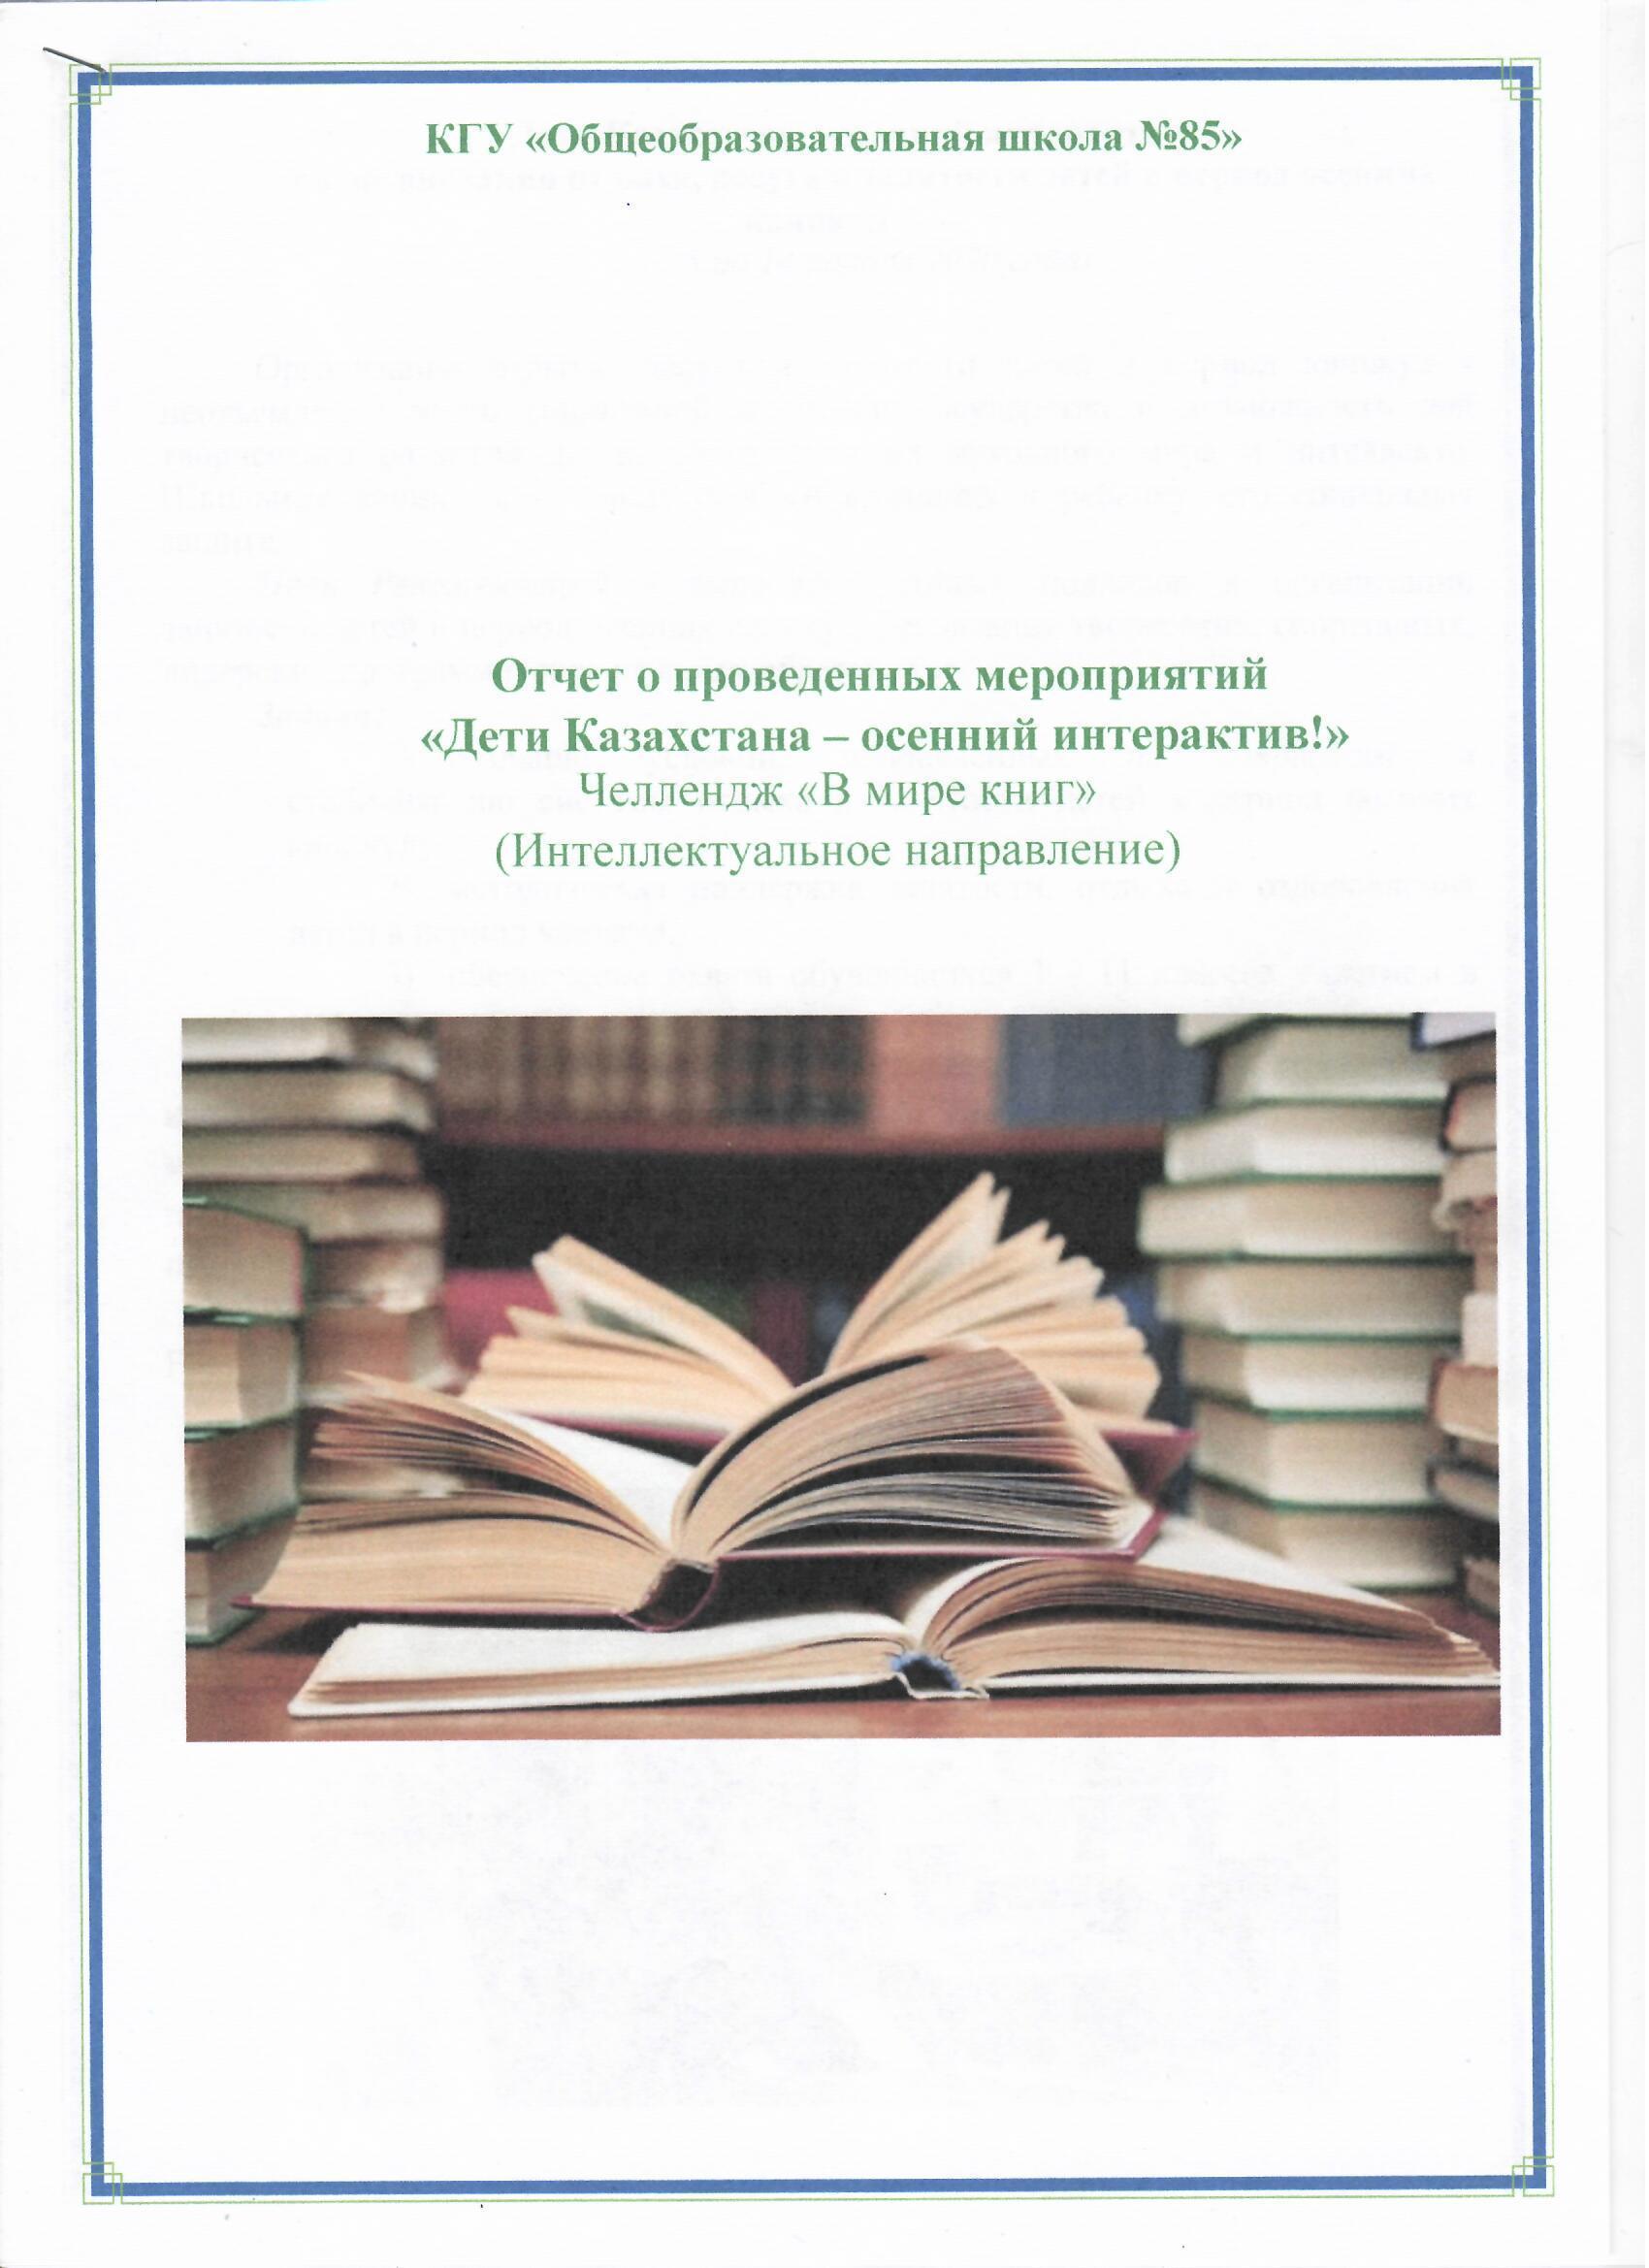 Отчет о мероприятиях, проведенных в рамках челленджа "В мире книг"